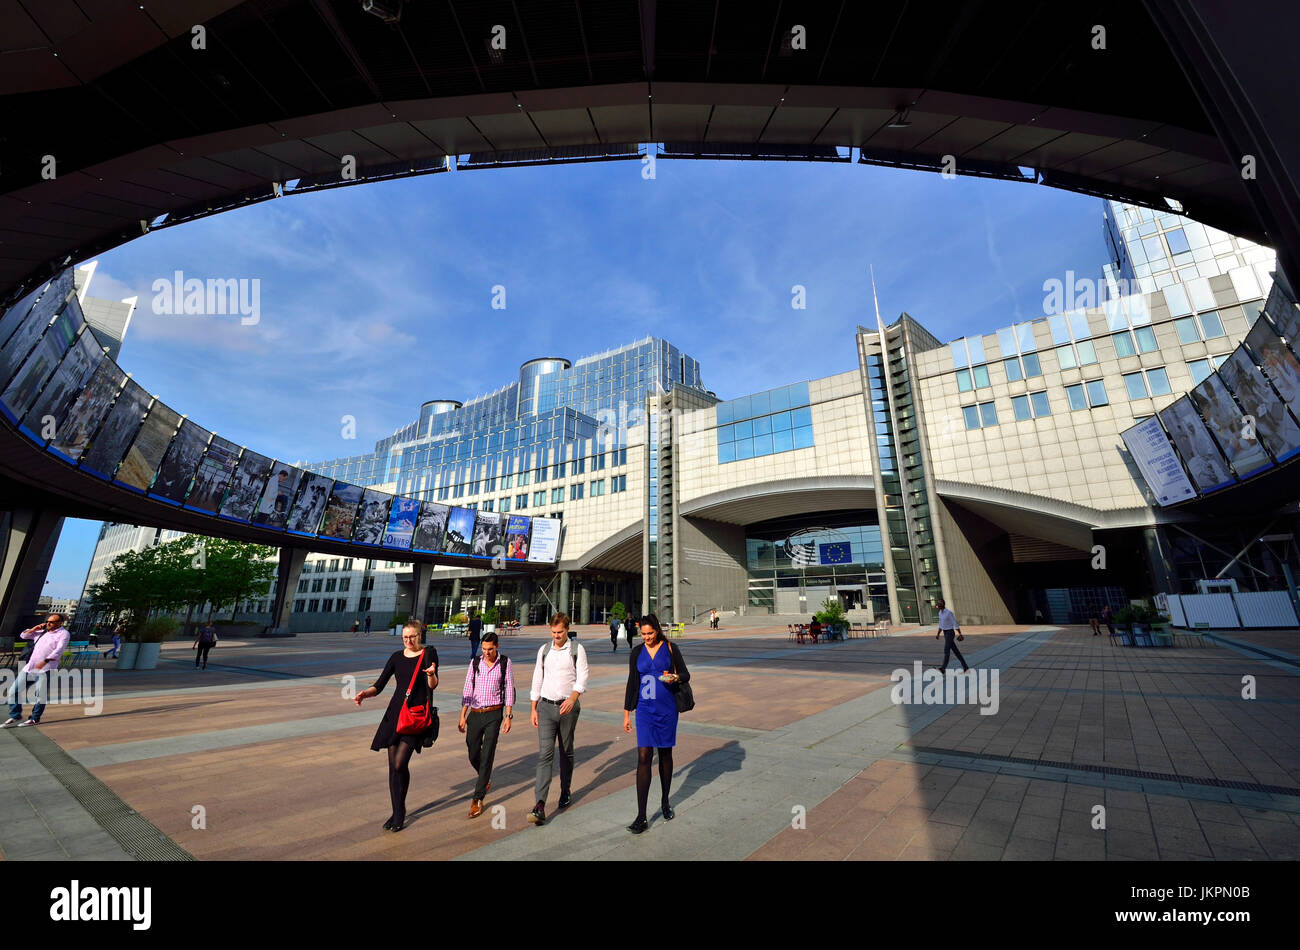 Bruselas, Bélgica. Edificio del Parlamento Europeo - Espace Léopold, espacio abierto por las entradas principales Foto de stock